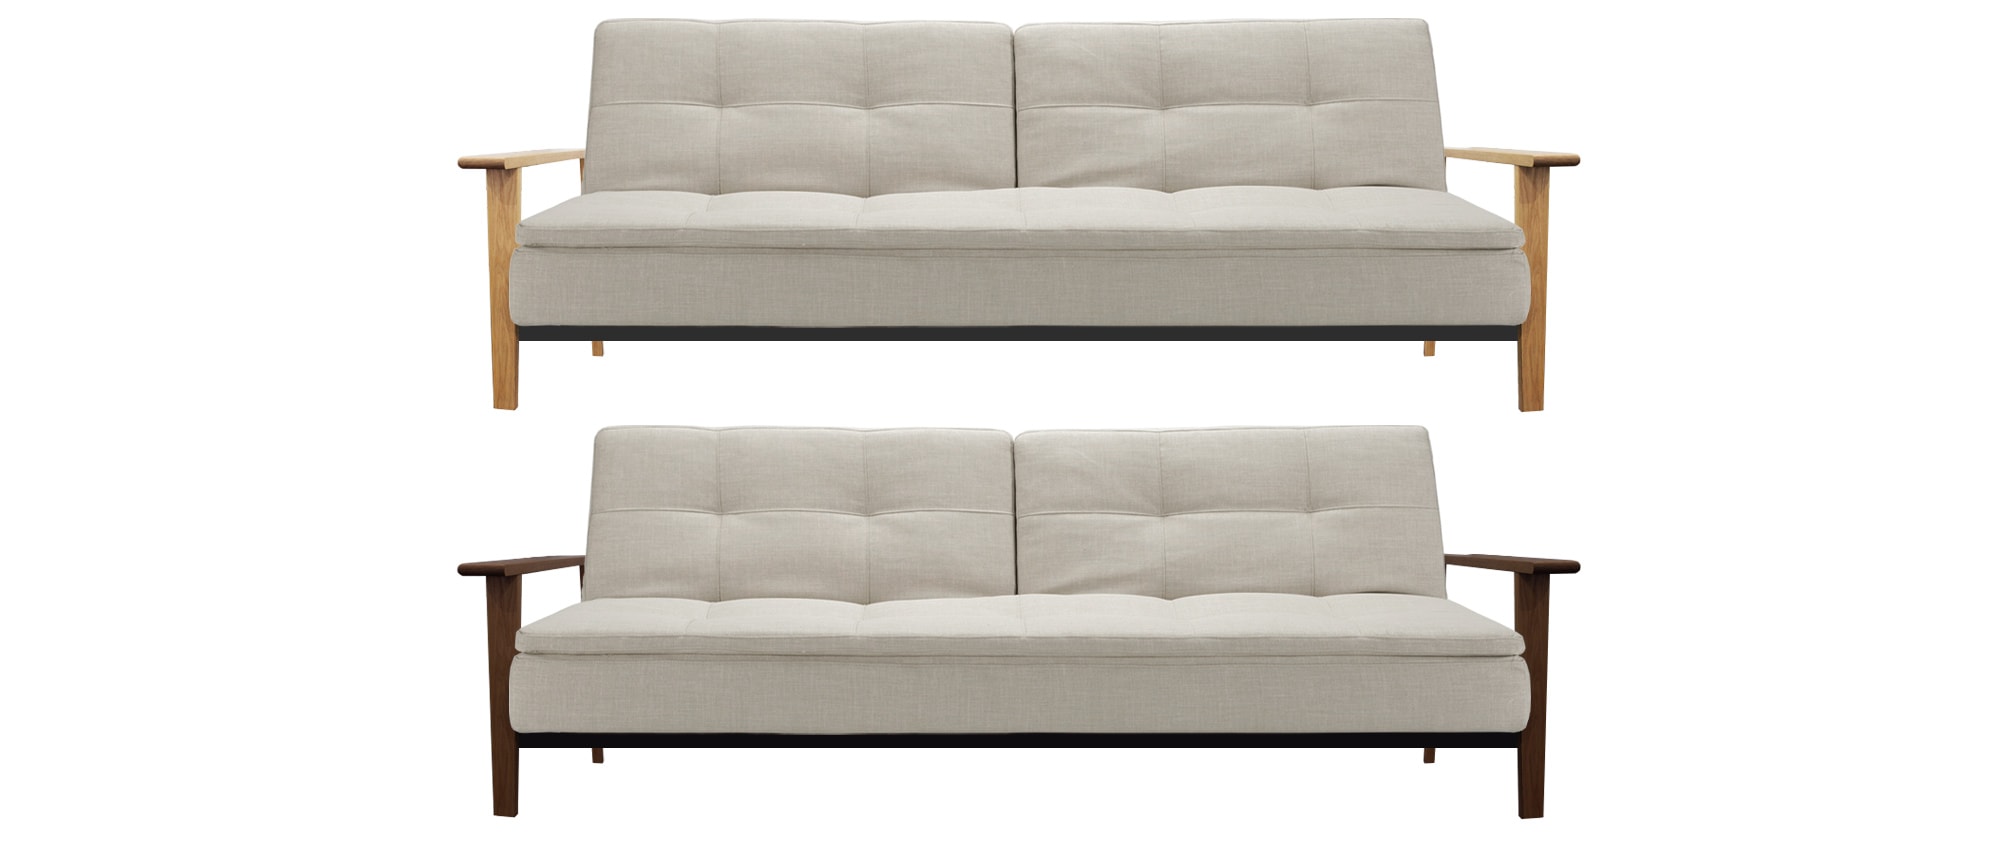 Klappsofa mit Schlaffunktion, skandinavisches Designer Sofa mit Holzarmlehnen, Gästebett für 2 Personen - Liegefläche 110x200cm